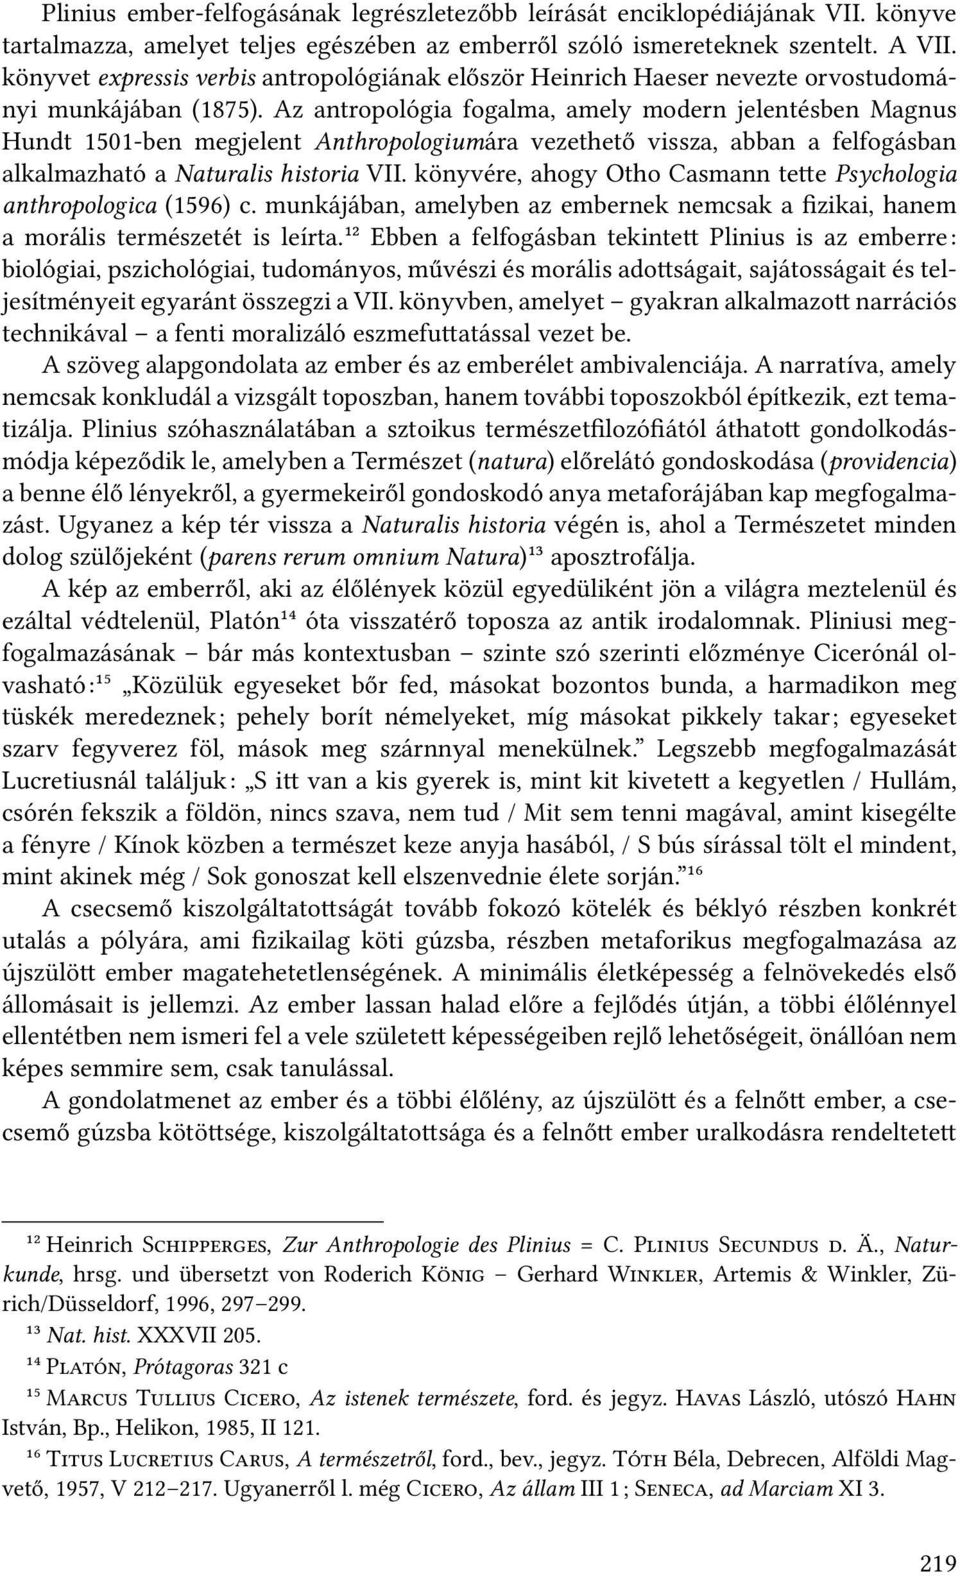 Az antropológia fogalma, amely modern jelentésben Magnus Hundt 1501-ben megjelent Anthropologiumára vezethető vissza, abban a felfogásban alkalmazható a Naturalis historia VII.